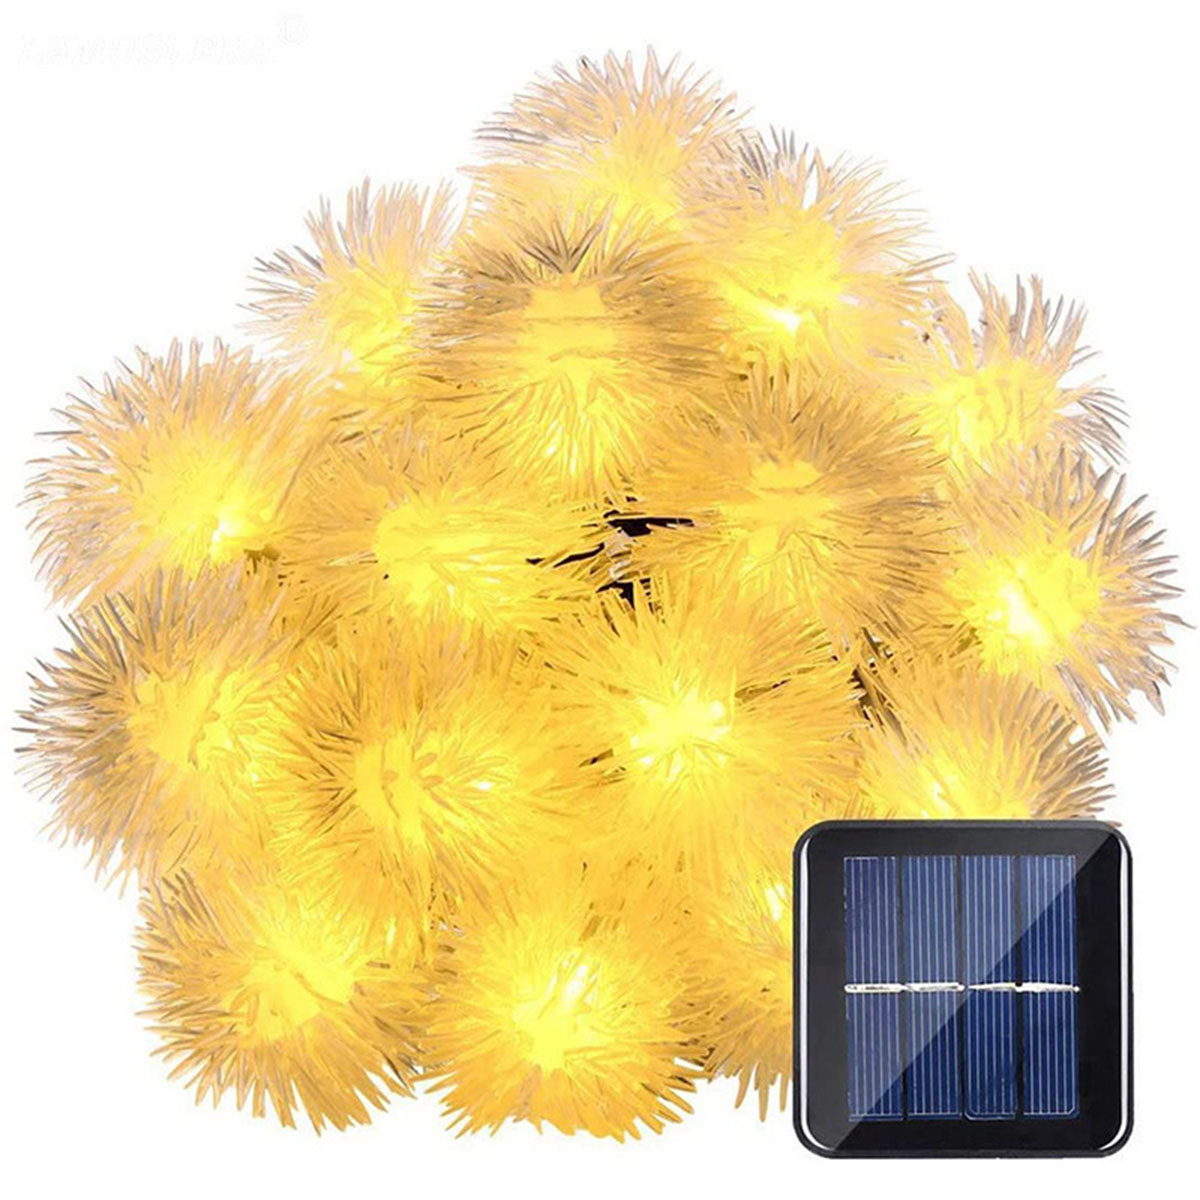 warmweiß, 8 Funktionen Haarballenlampe Warmweiß Leuchten 7 50 Solar-Lichterketten, Solarleuchte, LAMON Haarballen-Lampe, Meter